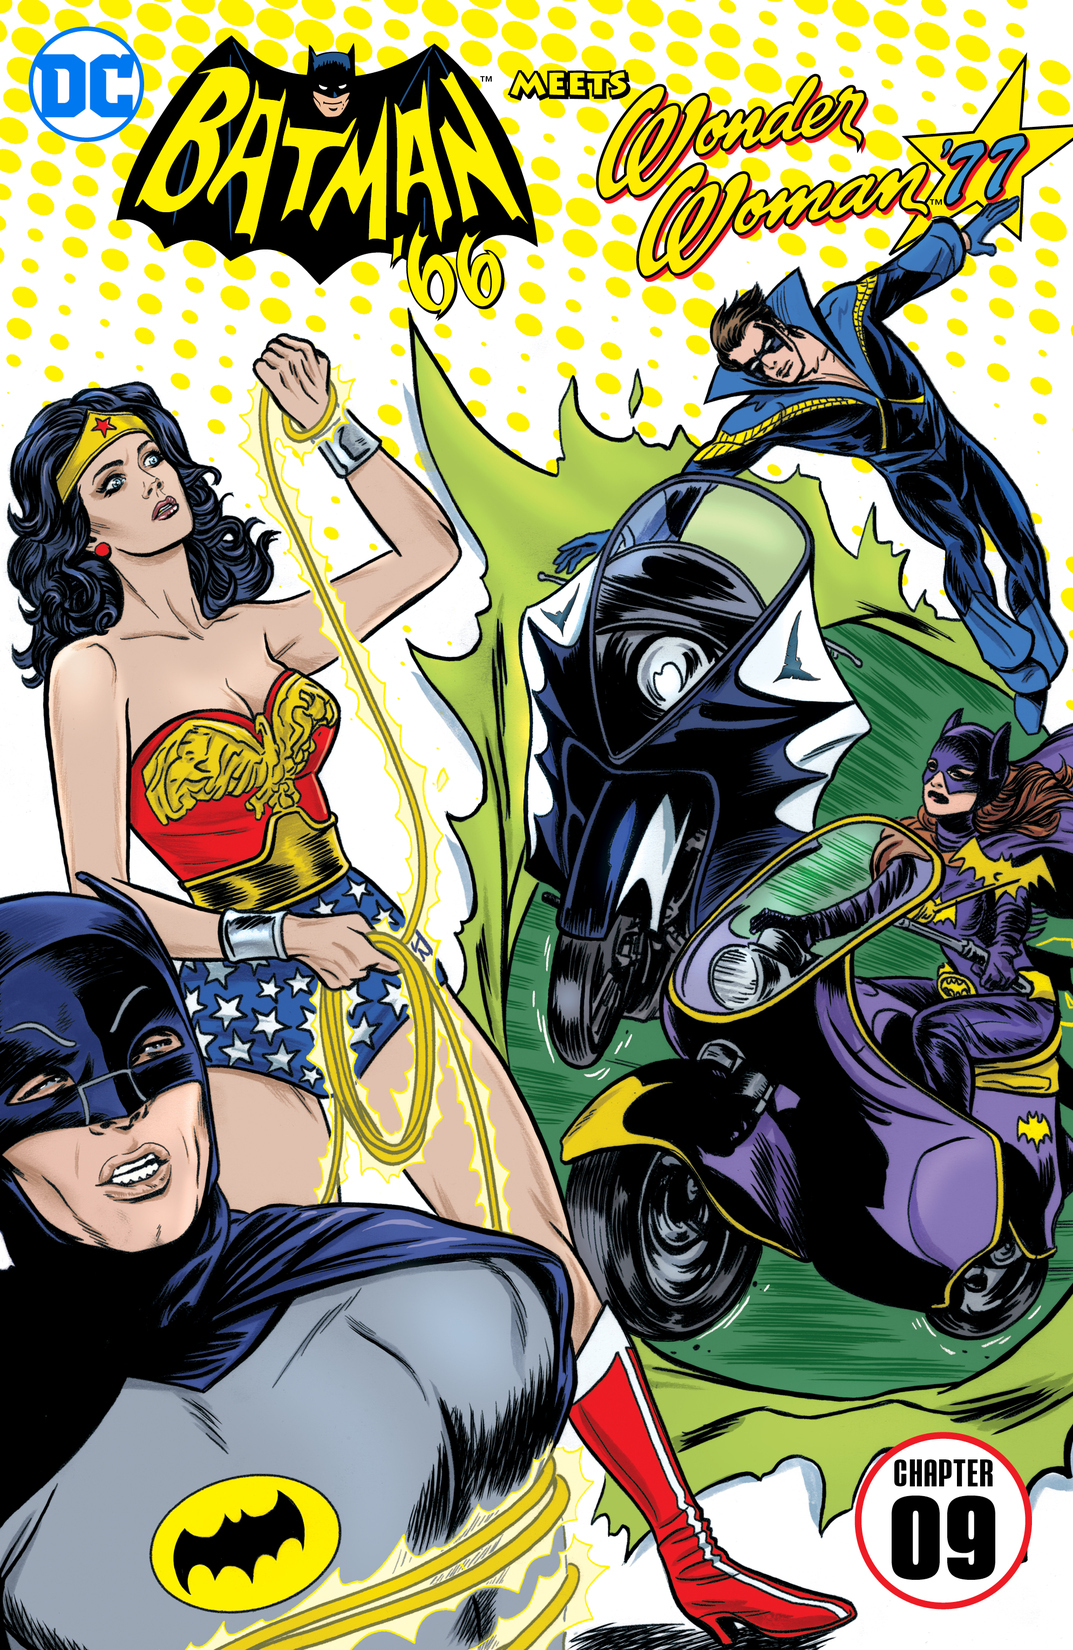 Batman '66 Meets Wonder Woman '77 #9 preview images